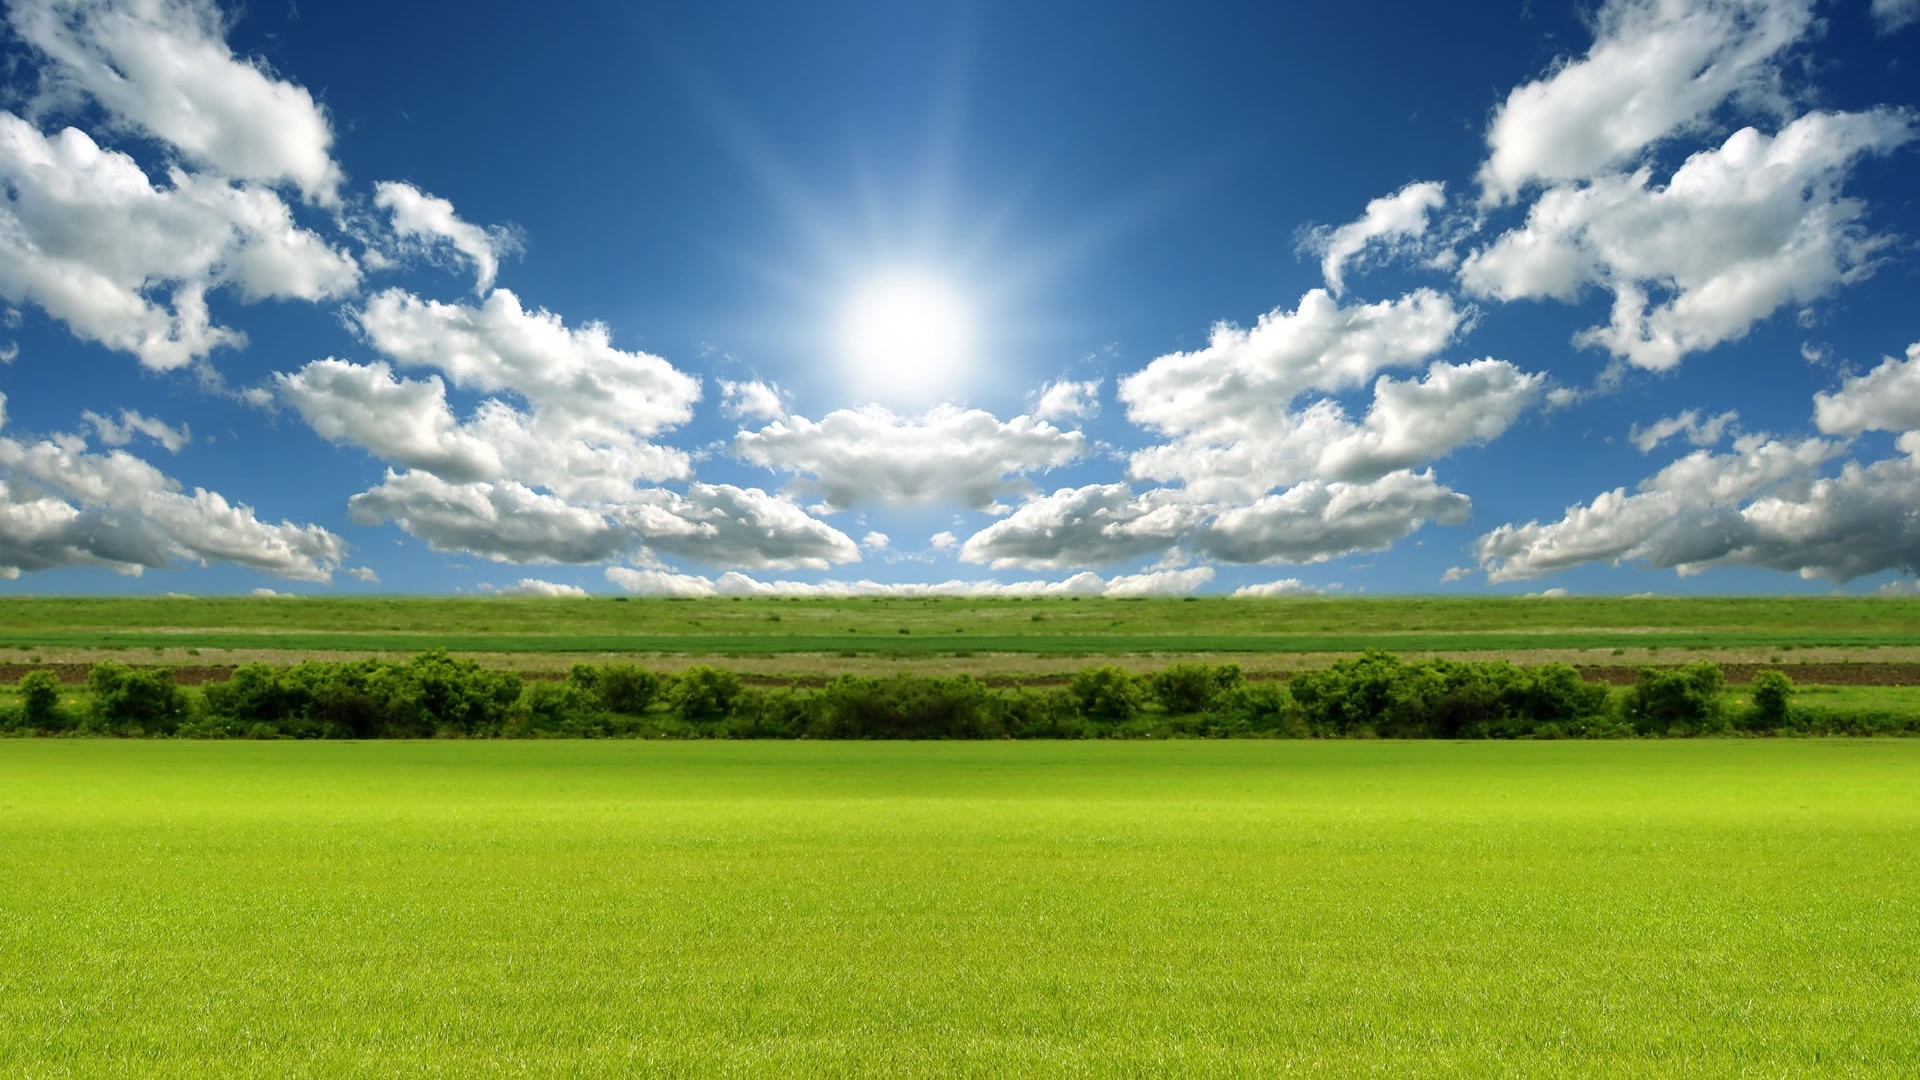 лето пейзаж трава сельских сенокос облако поле ферма небо природа сельской местности пастбище хорошую погоду солнце газон пастбища горизонт облачно страна сельское хозяйство